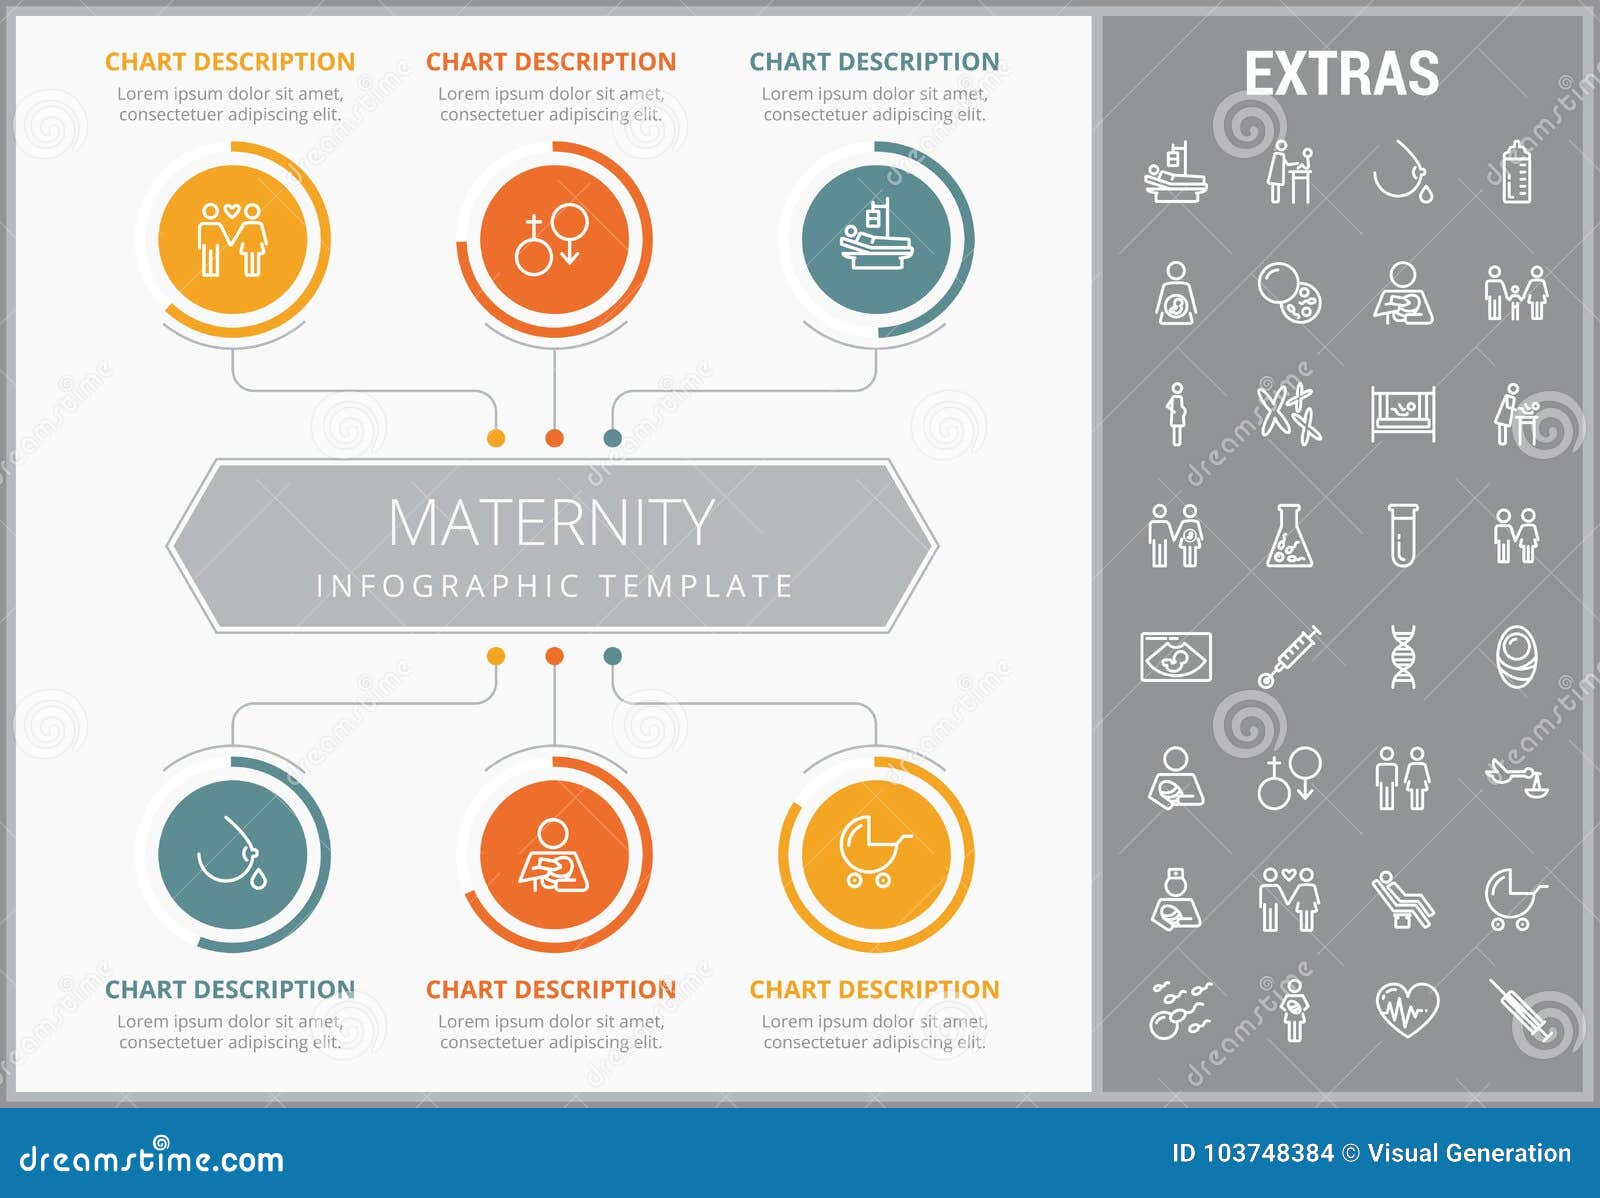 Maternity Chart